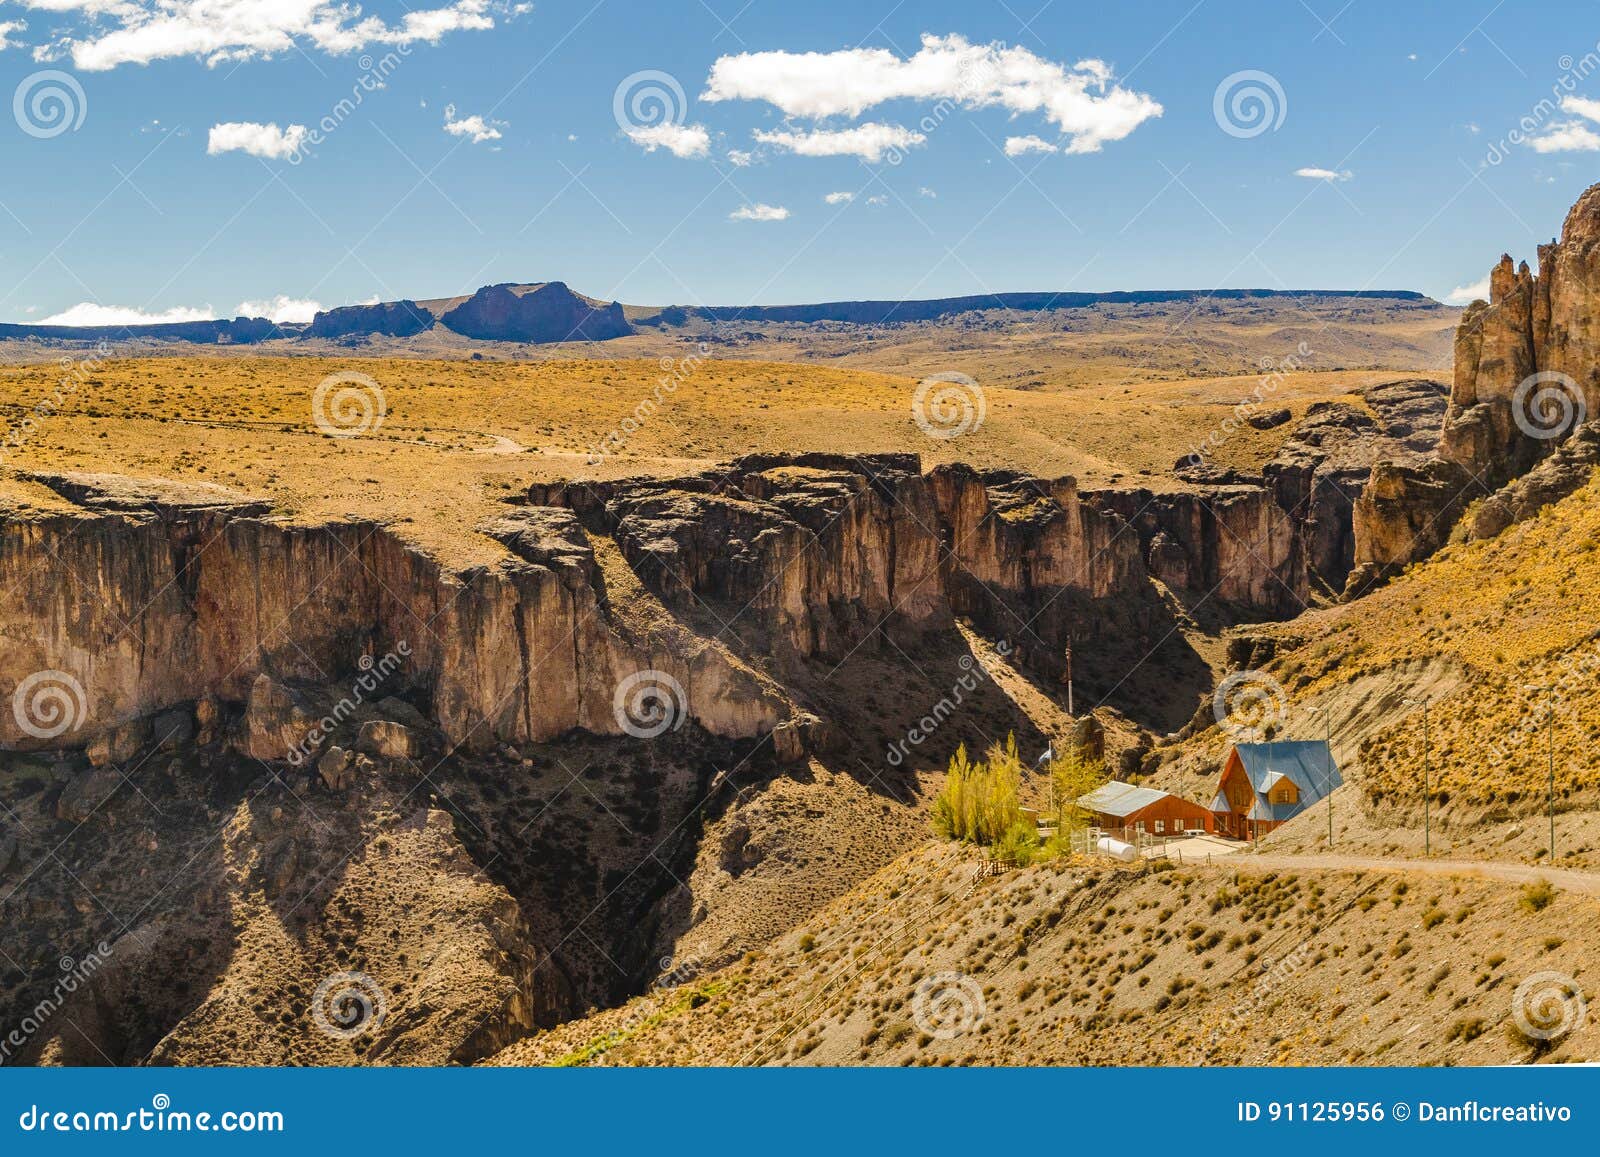 cueva de las manos, patagonia, argentina